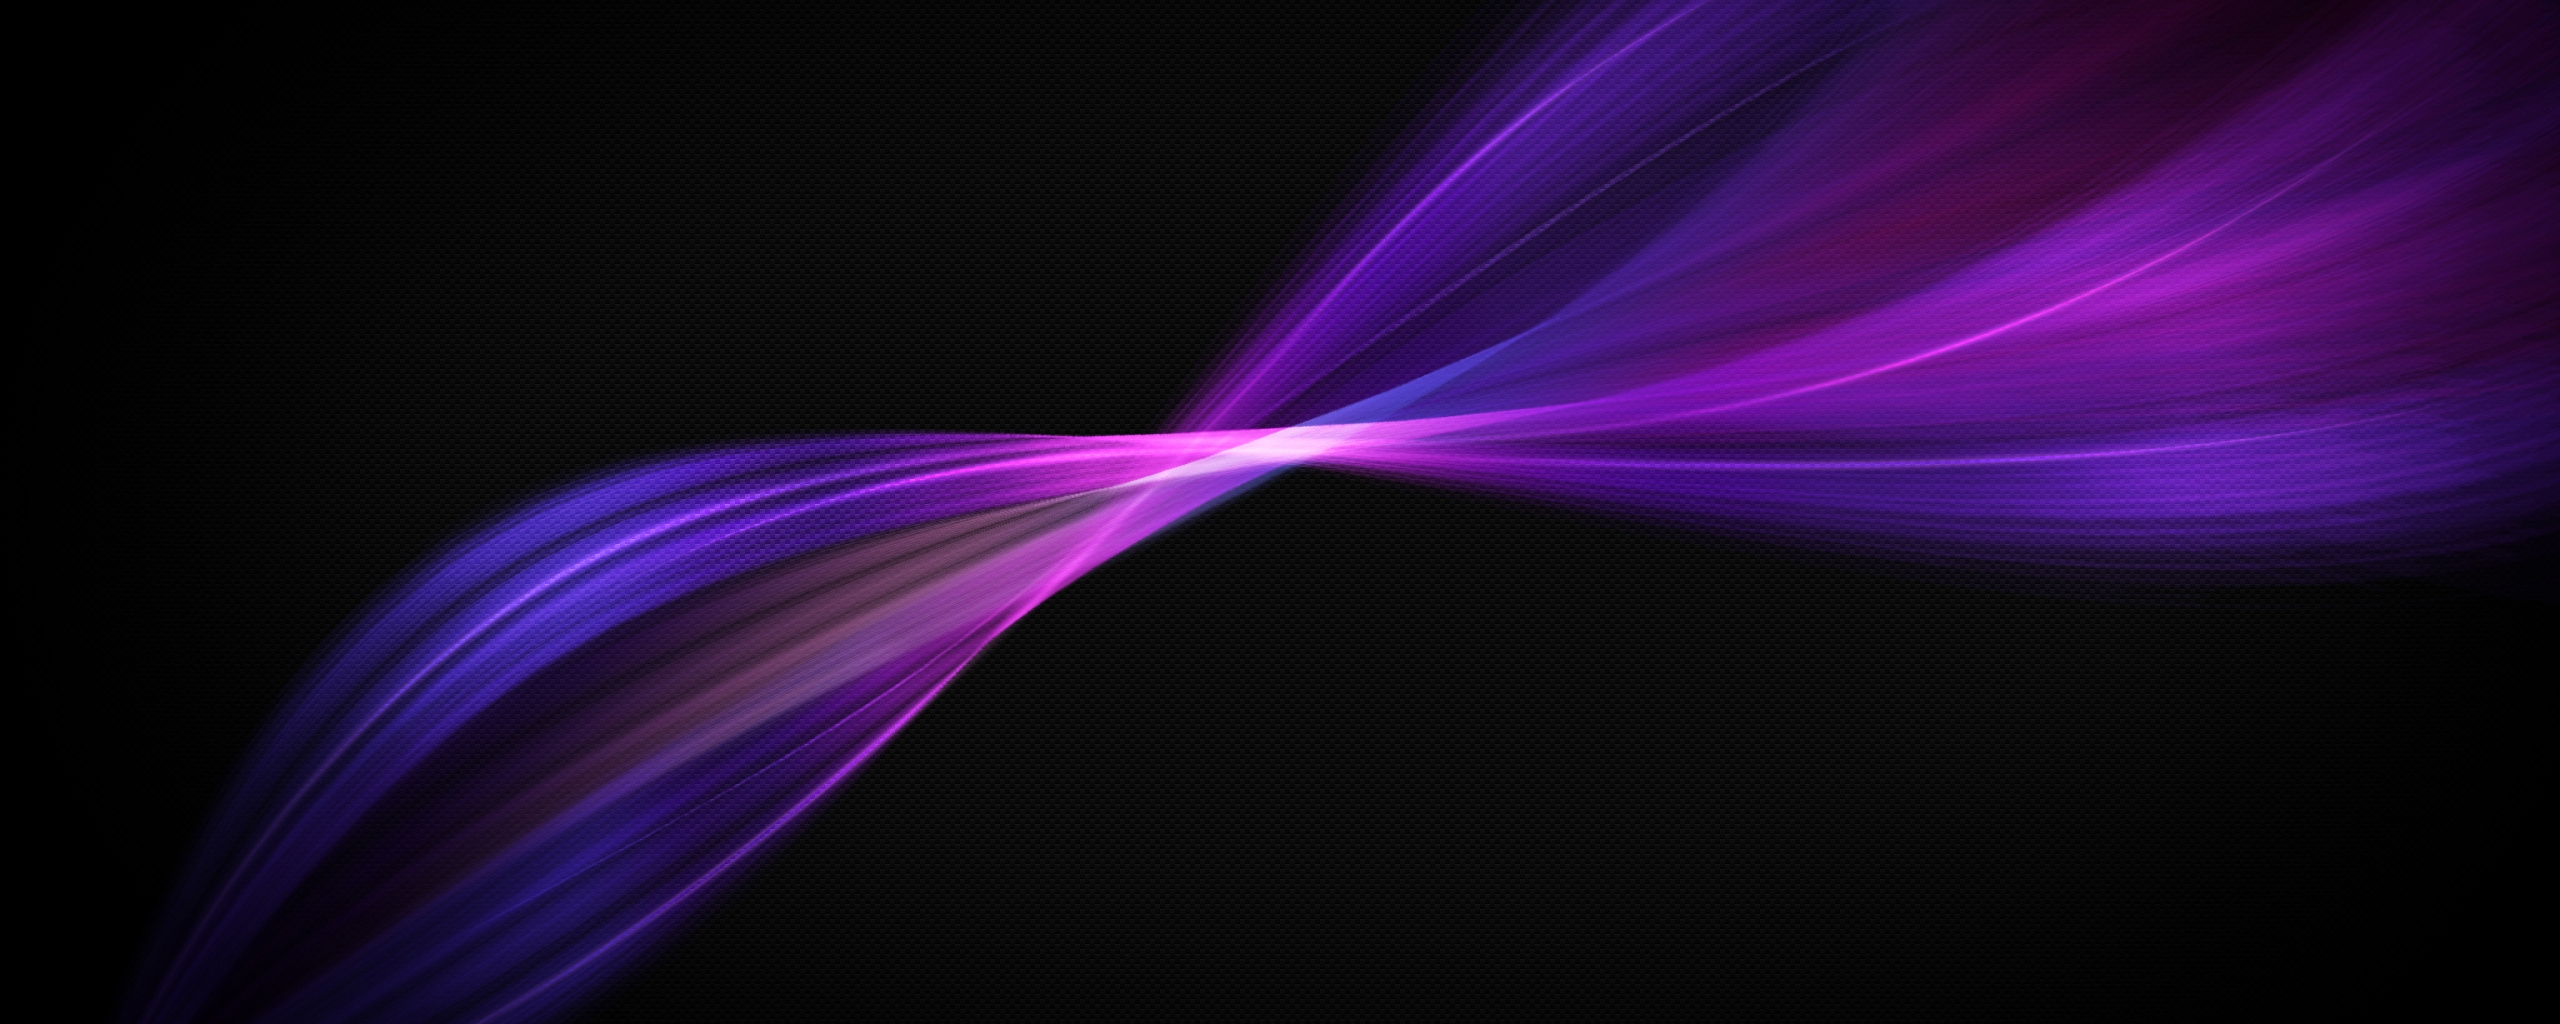 Desktop Wallpaper Black Background Line Violet Color Graphics, Hd Image ...